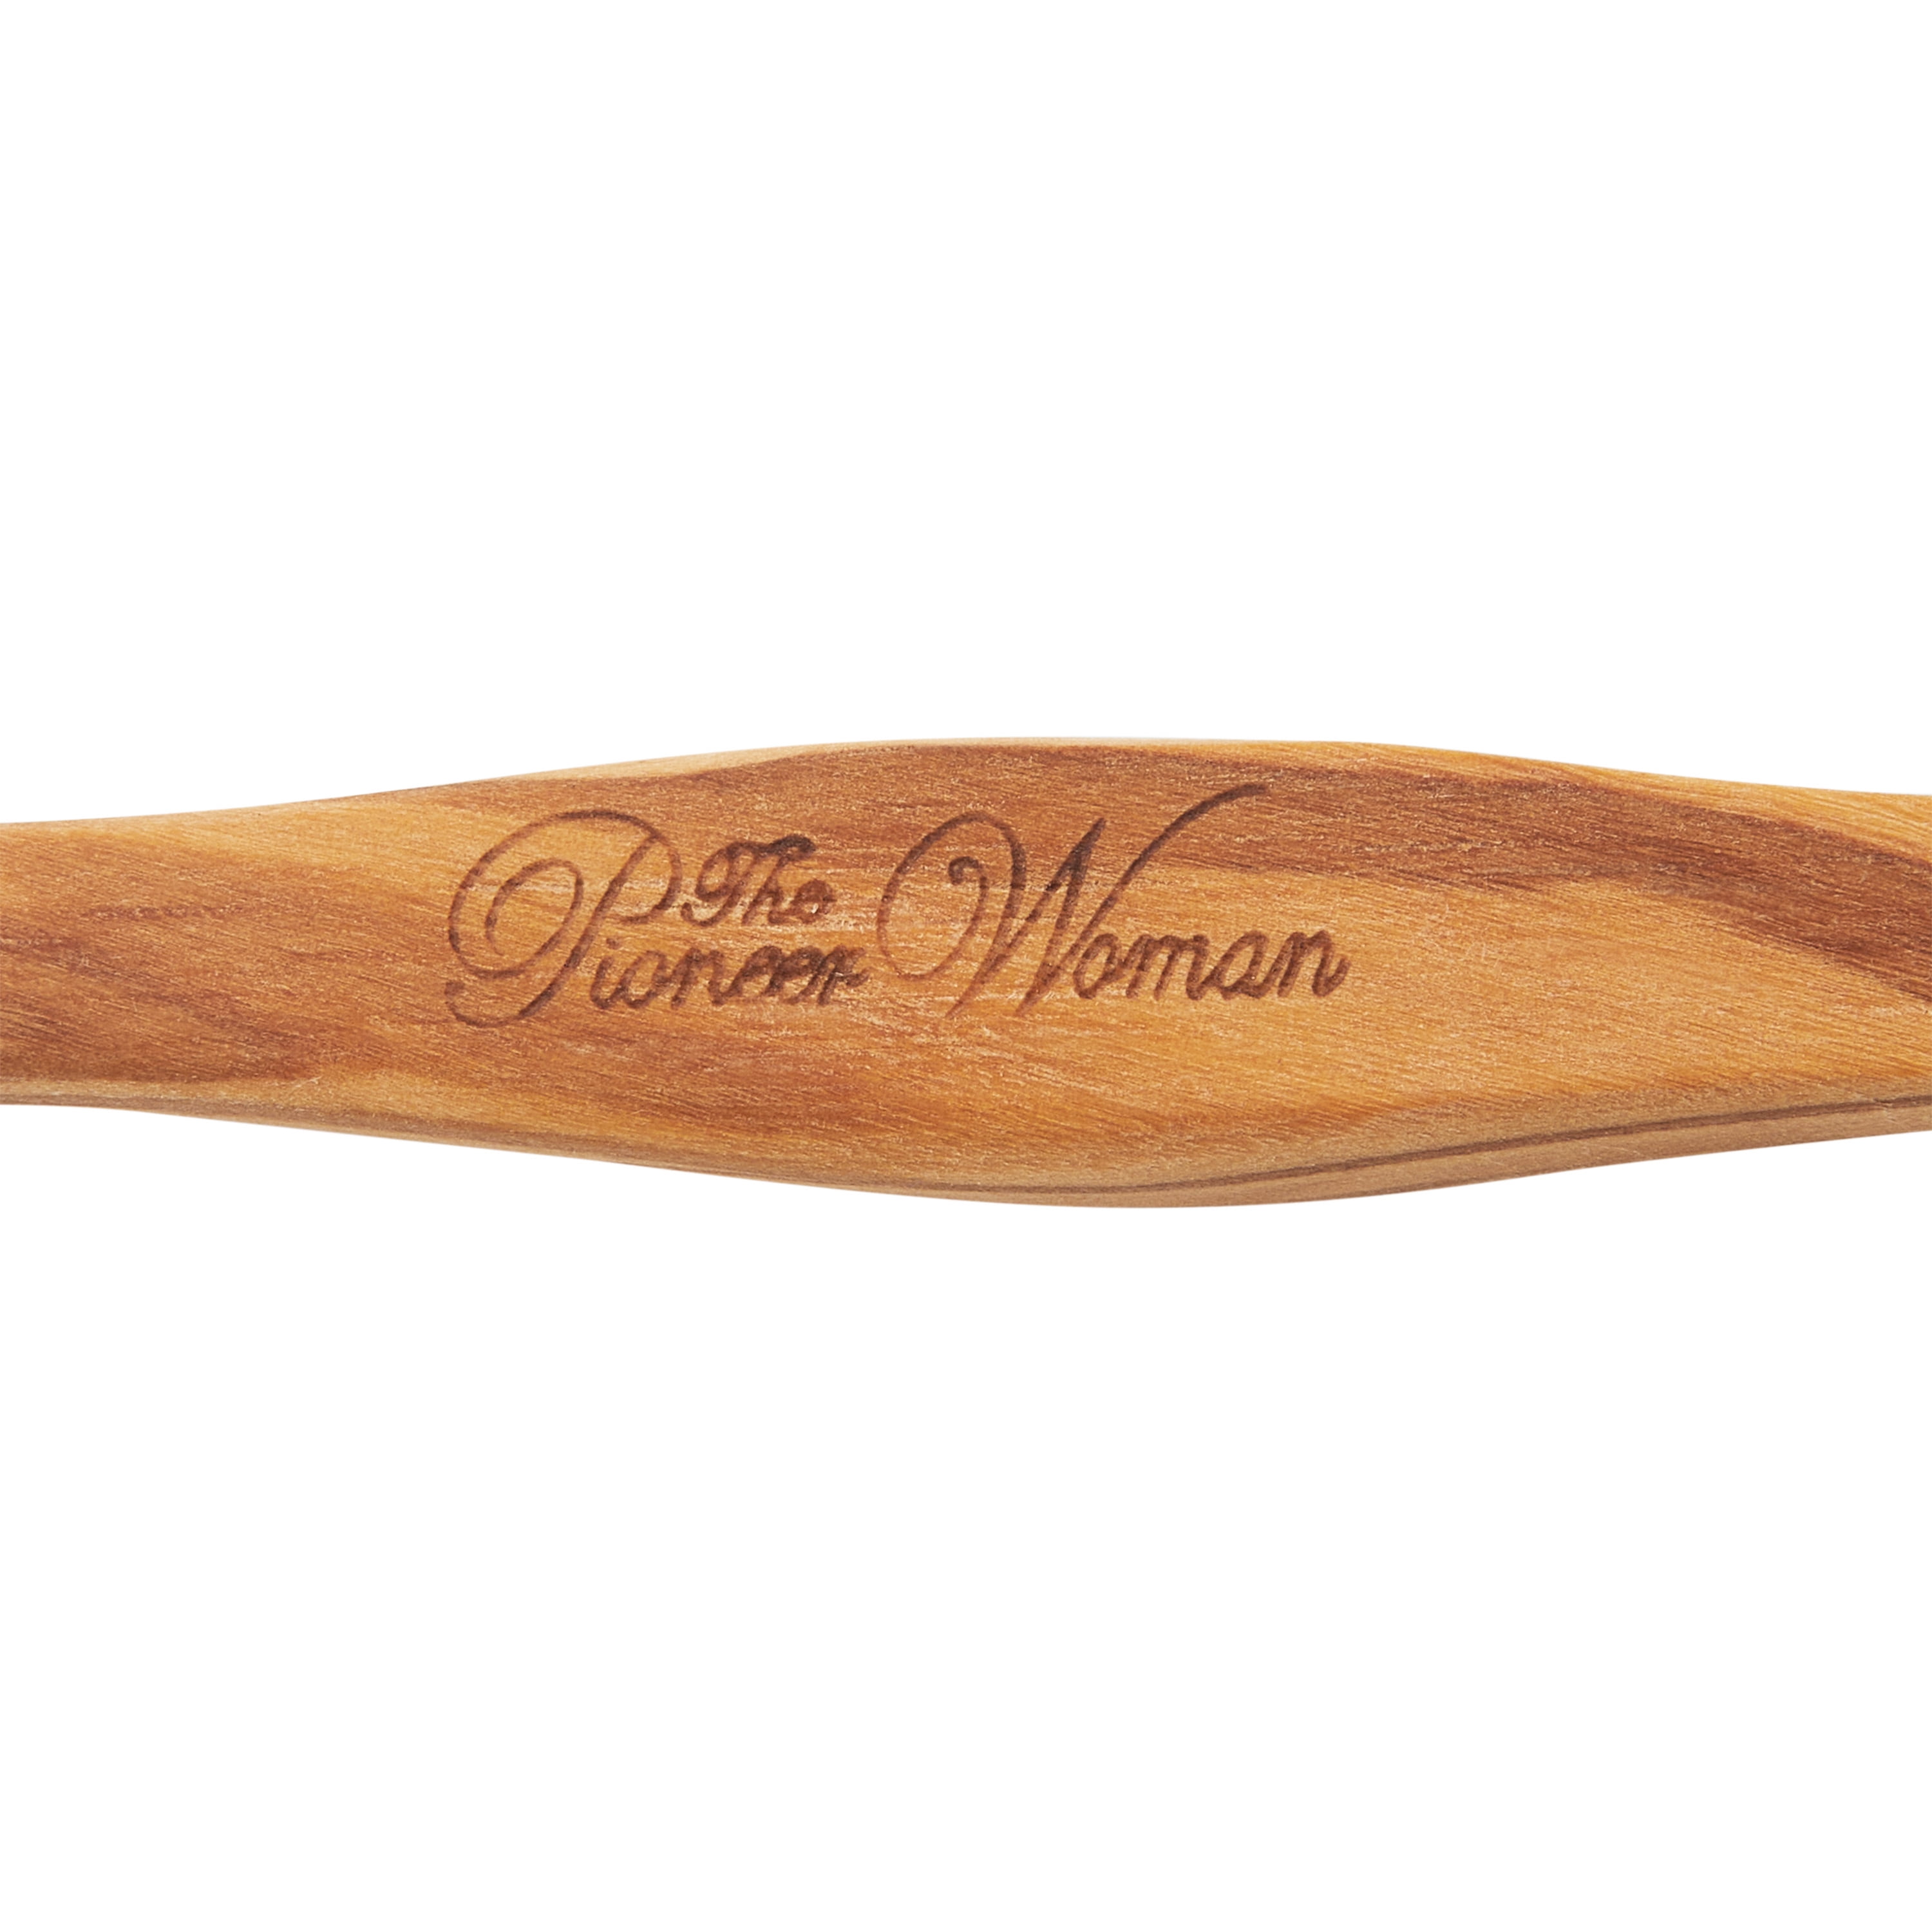 The Pioneer Woman Cowboy Rustic Olive Wood Spoon